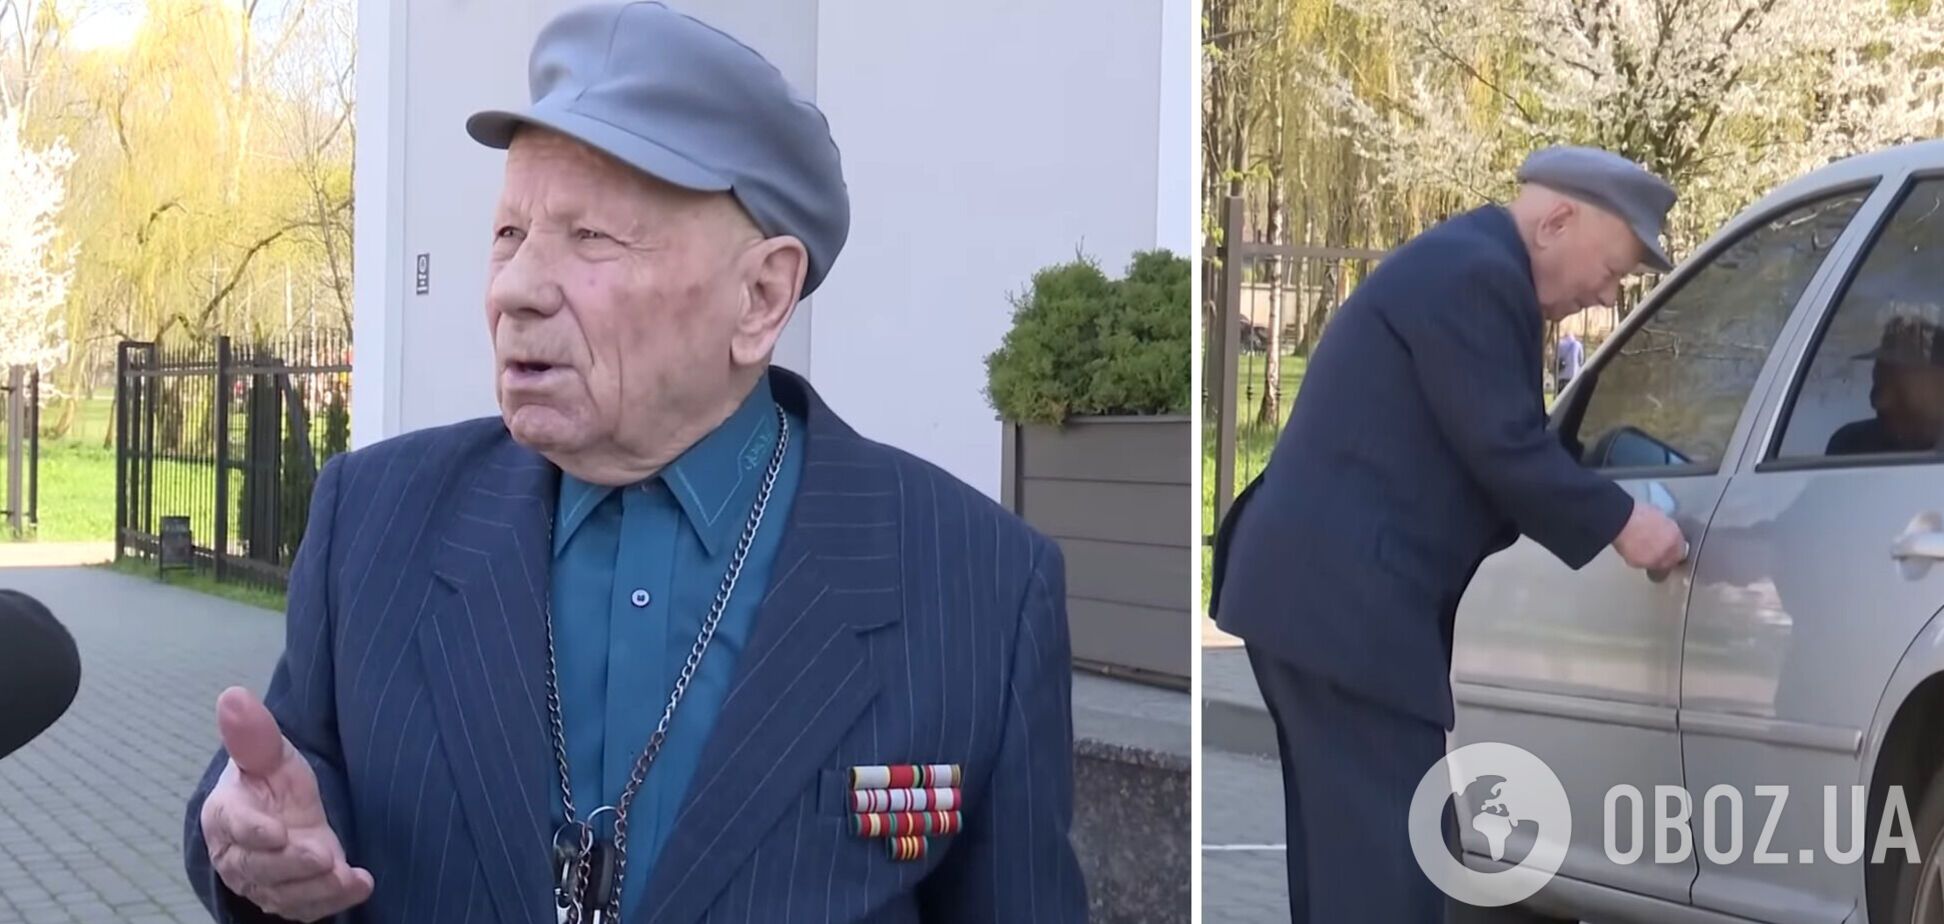 'Они сделали мне подставу': 91-летний водитель из Луцка через суд доказывает свою невиновность в ДТП. Видео